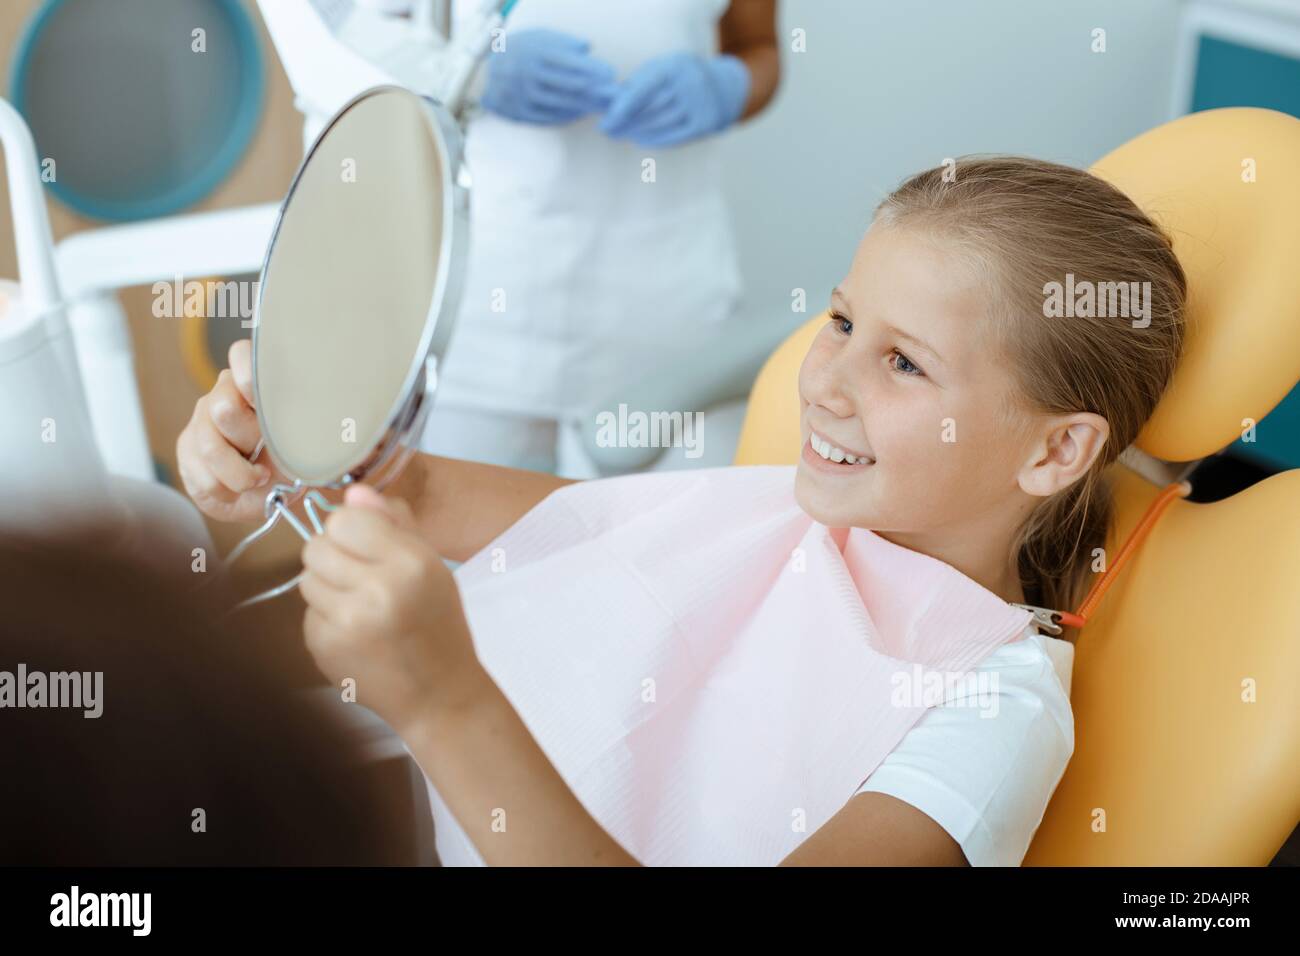 Trate los dientes malos y la sonrisa blanca como la nieve después del procedimiento Foto de stock